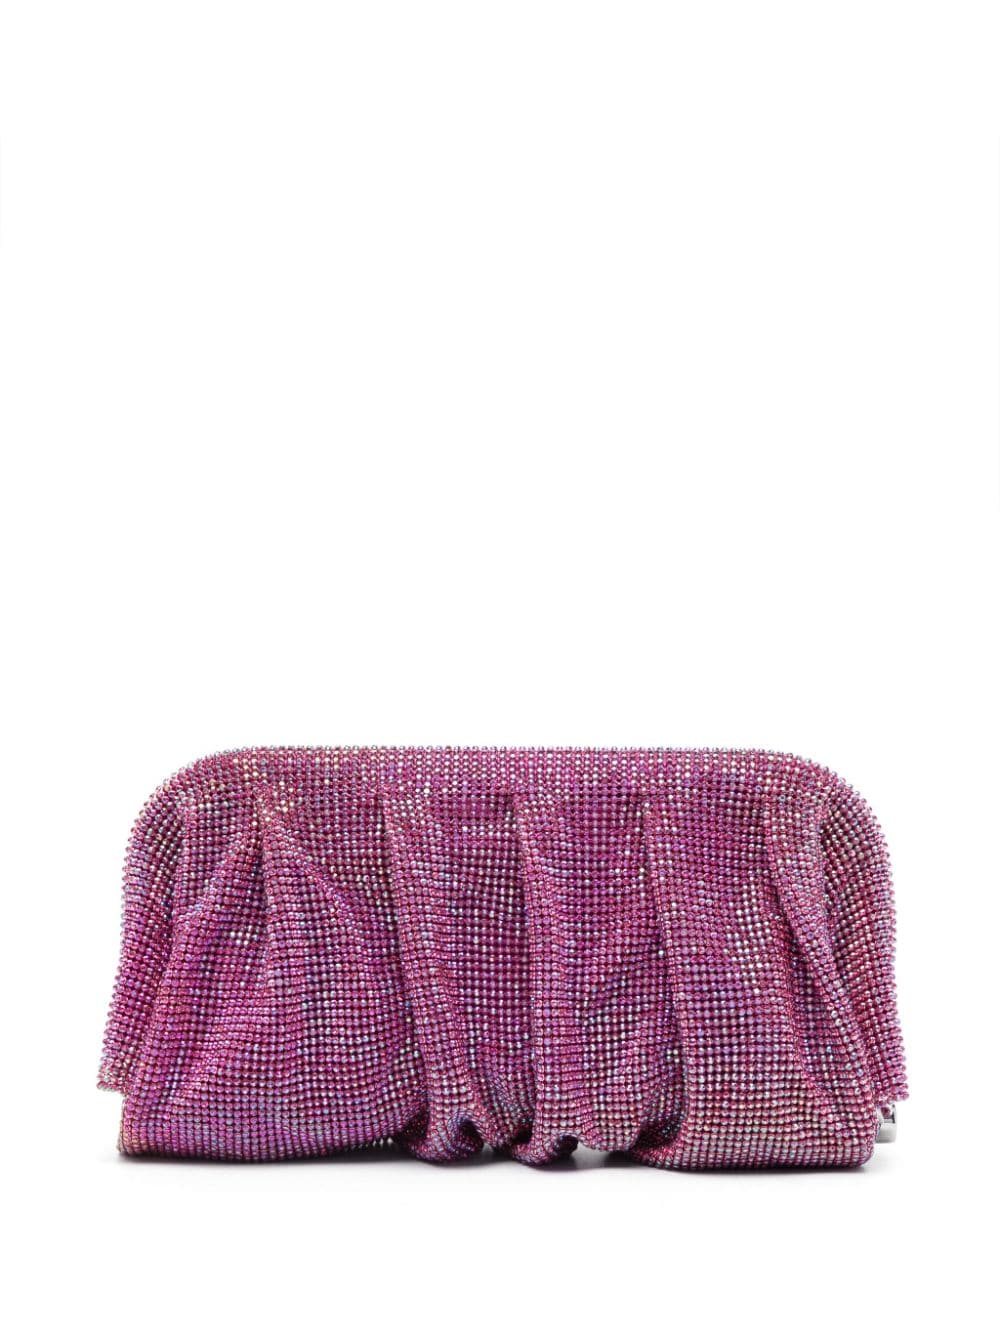 Benedetta Bruzziches rhinestone draped clutch bag - Pink von Benedetta Bruzziches